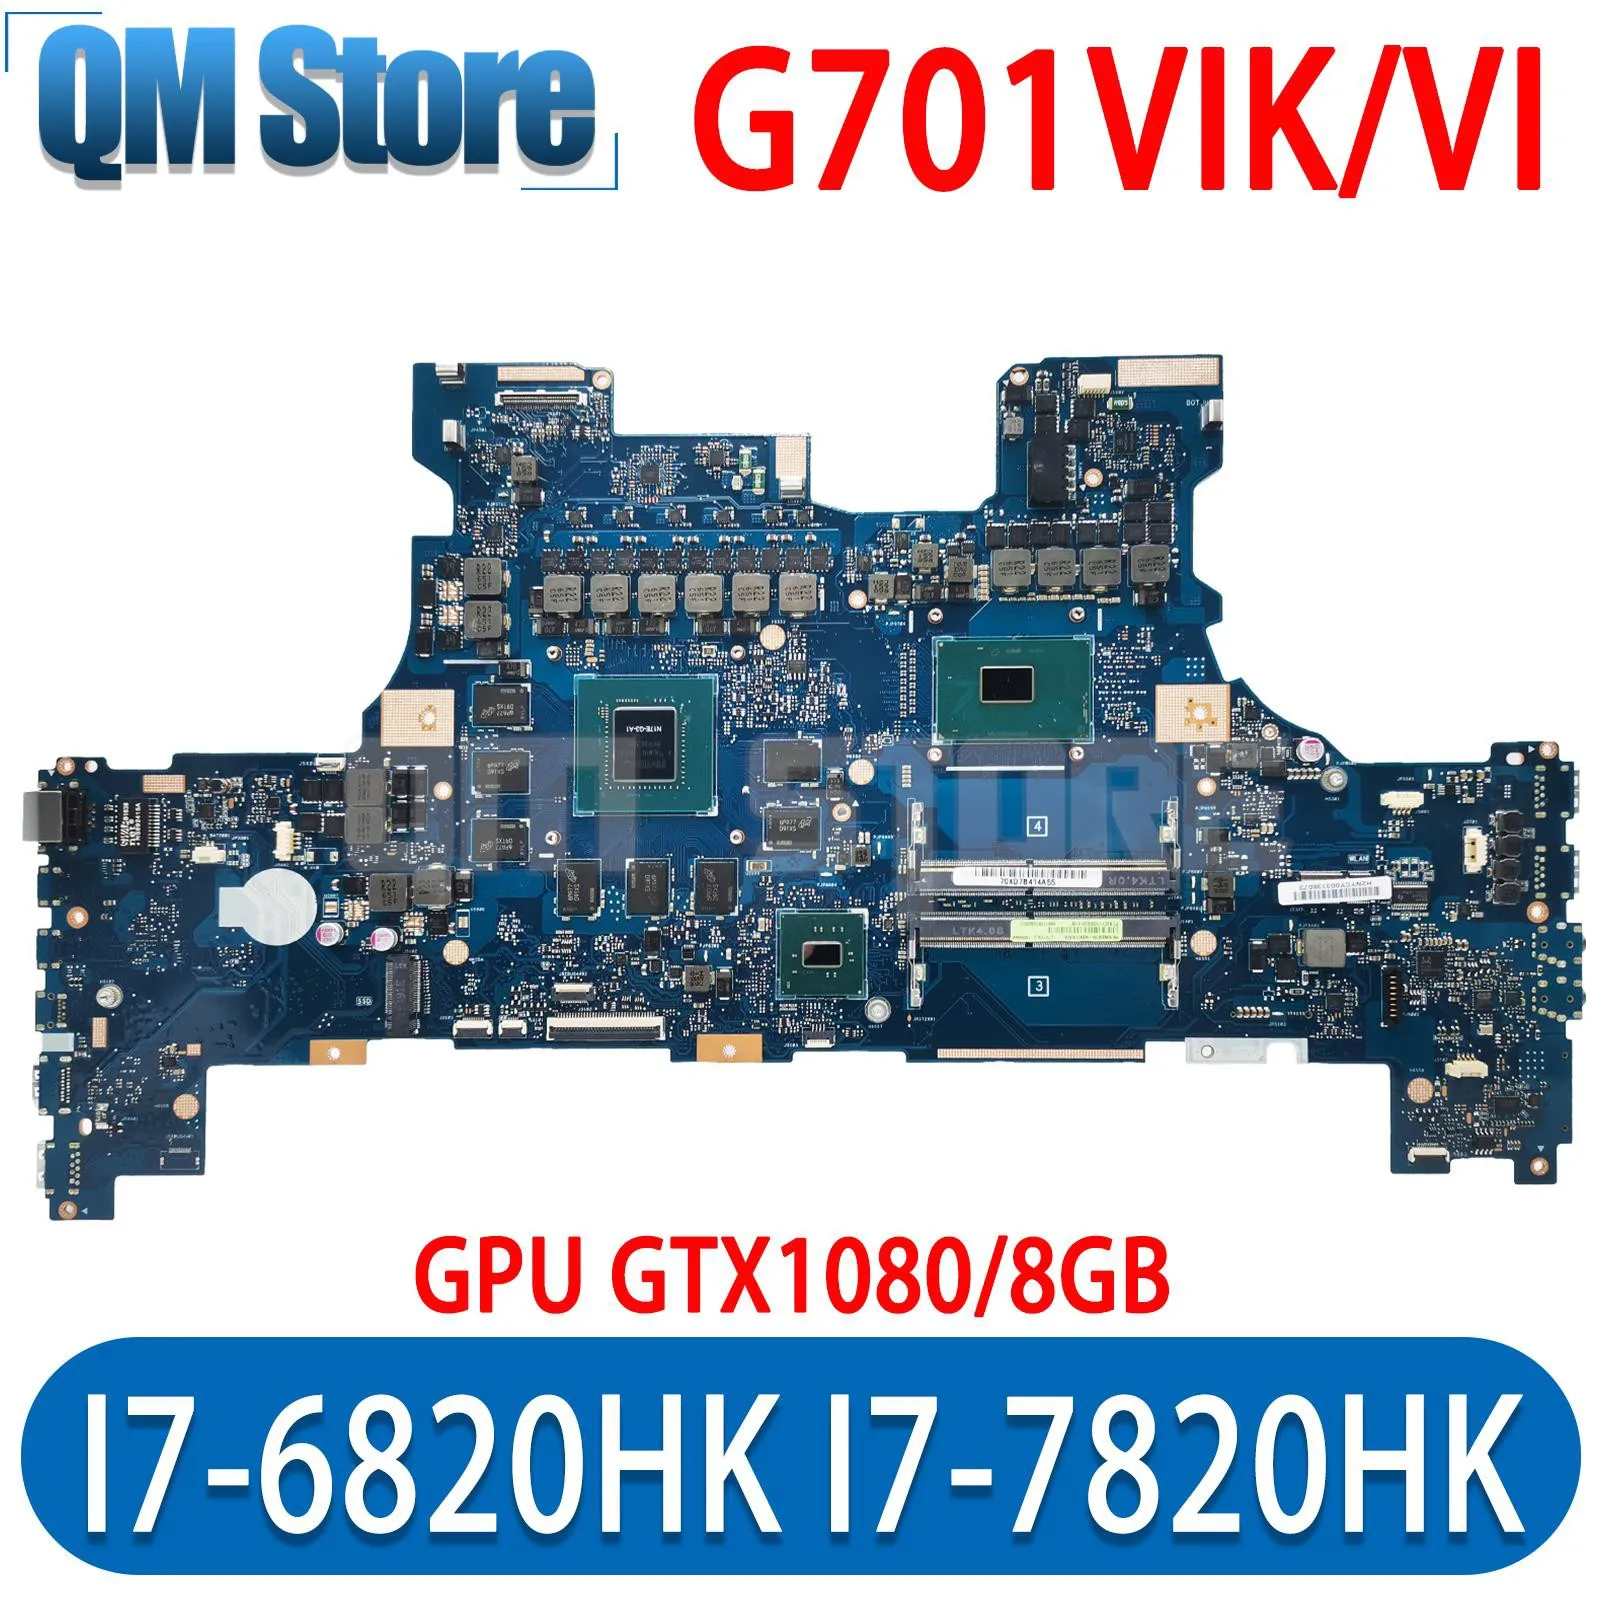 

QM G701V Notebook Mainboard I7-6820HK I7-7820HK CPU For ASUS G701VI ROG G701 G701VIK Laptop Motherboard GPU GTX1080/8GB DDR4